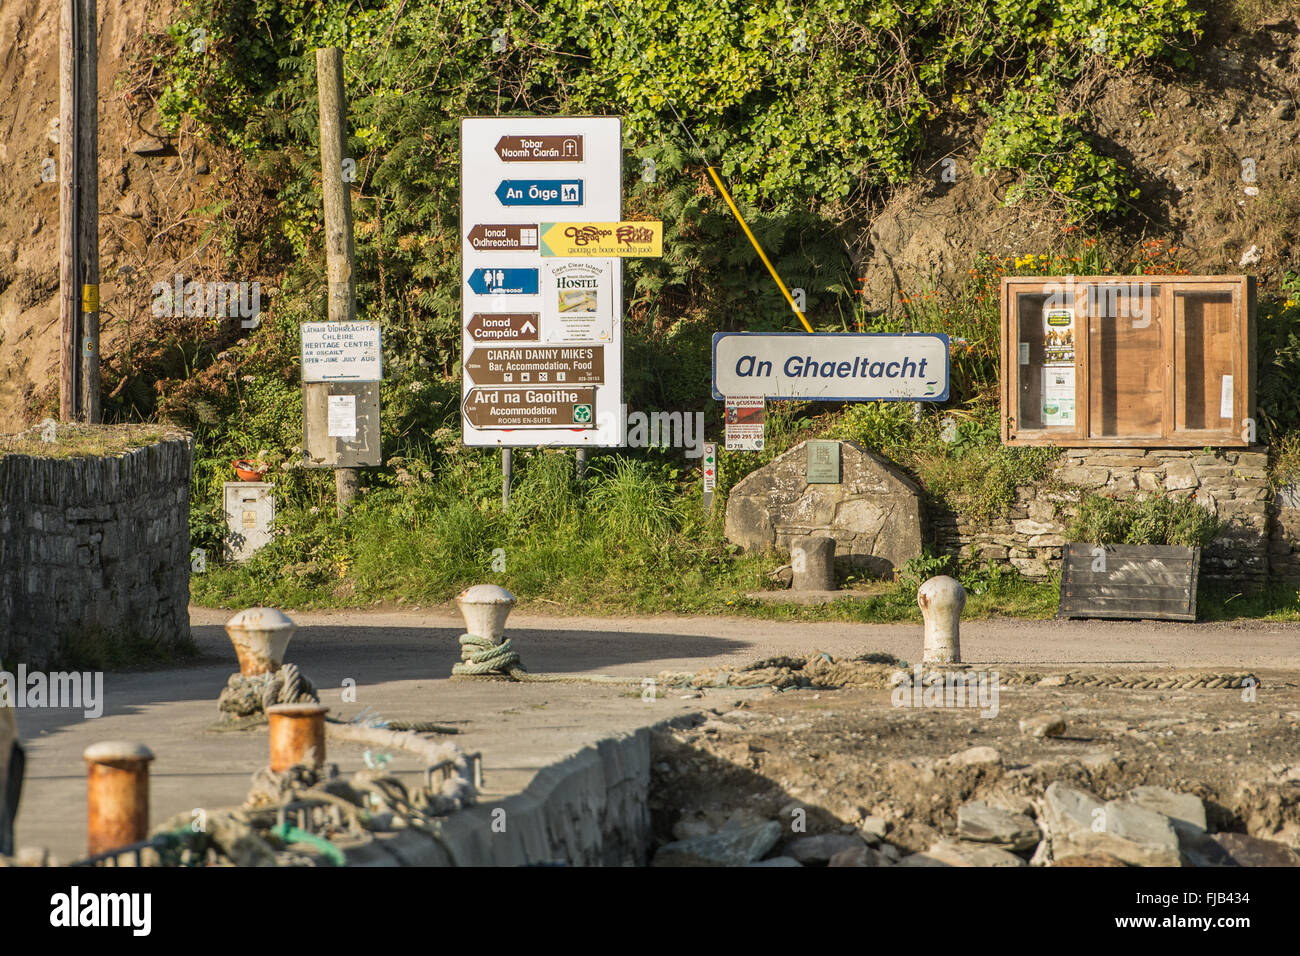 Des signes dans l'irlandais dans le Galetacht (Irlandais) francophones de l'île de Cape Clear off au sud-ouest de l'Irlande Banque D'Images